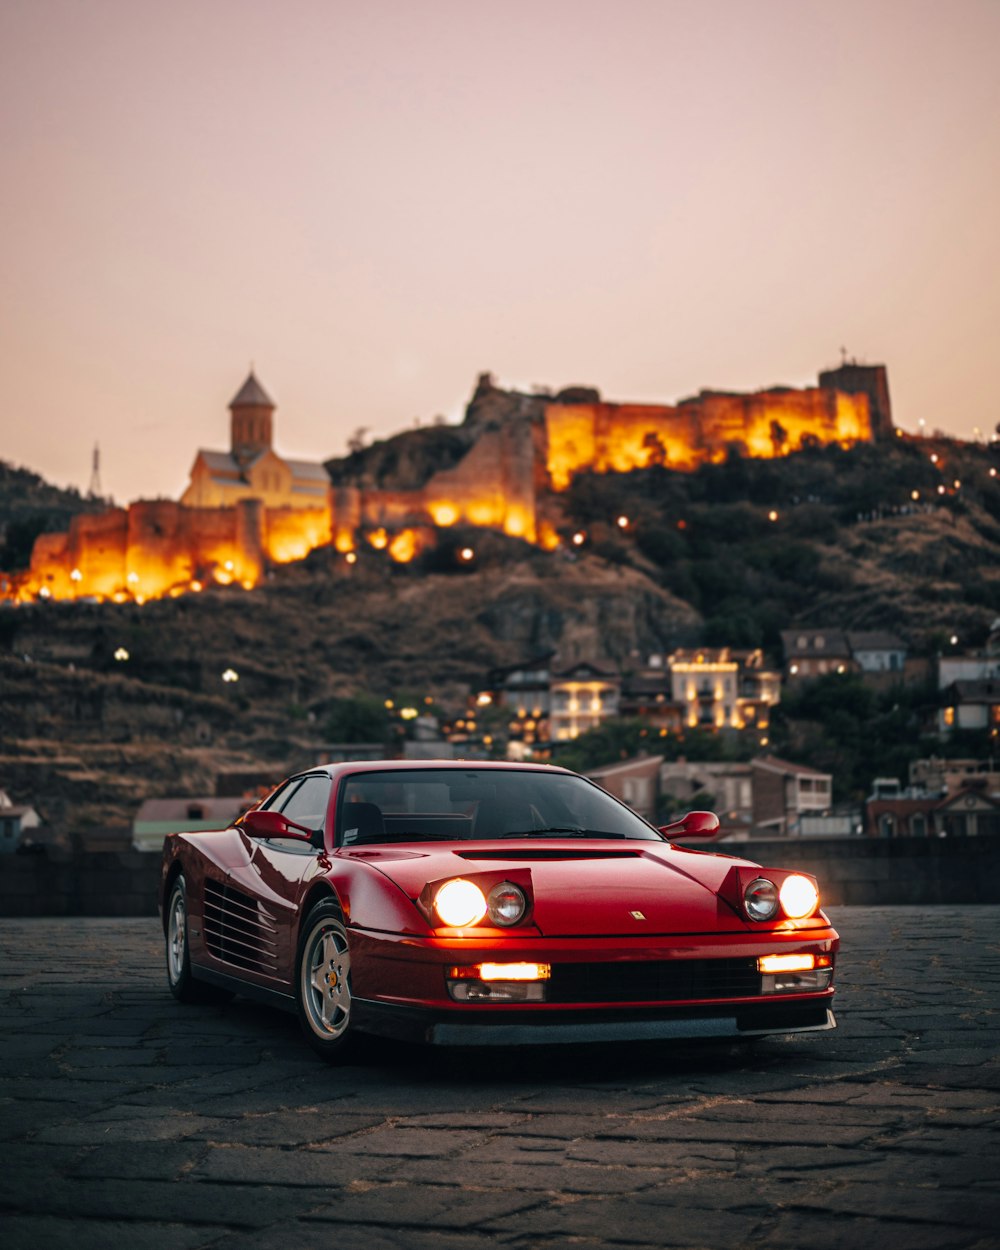 Une voiture de sport rouge garée devant un château